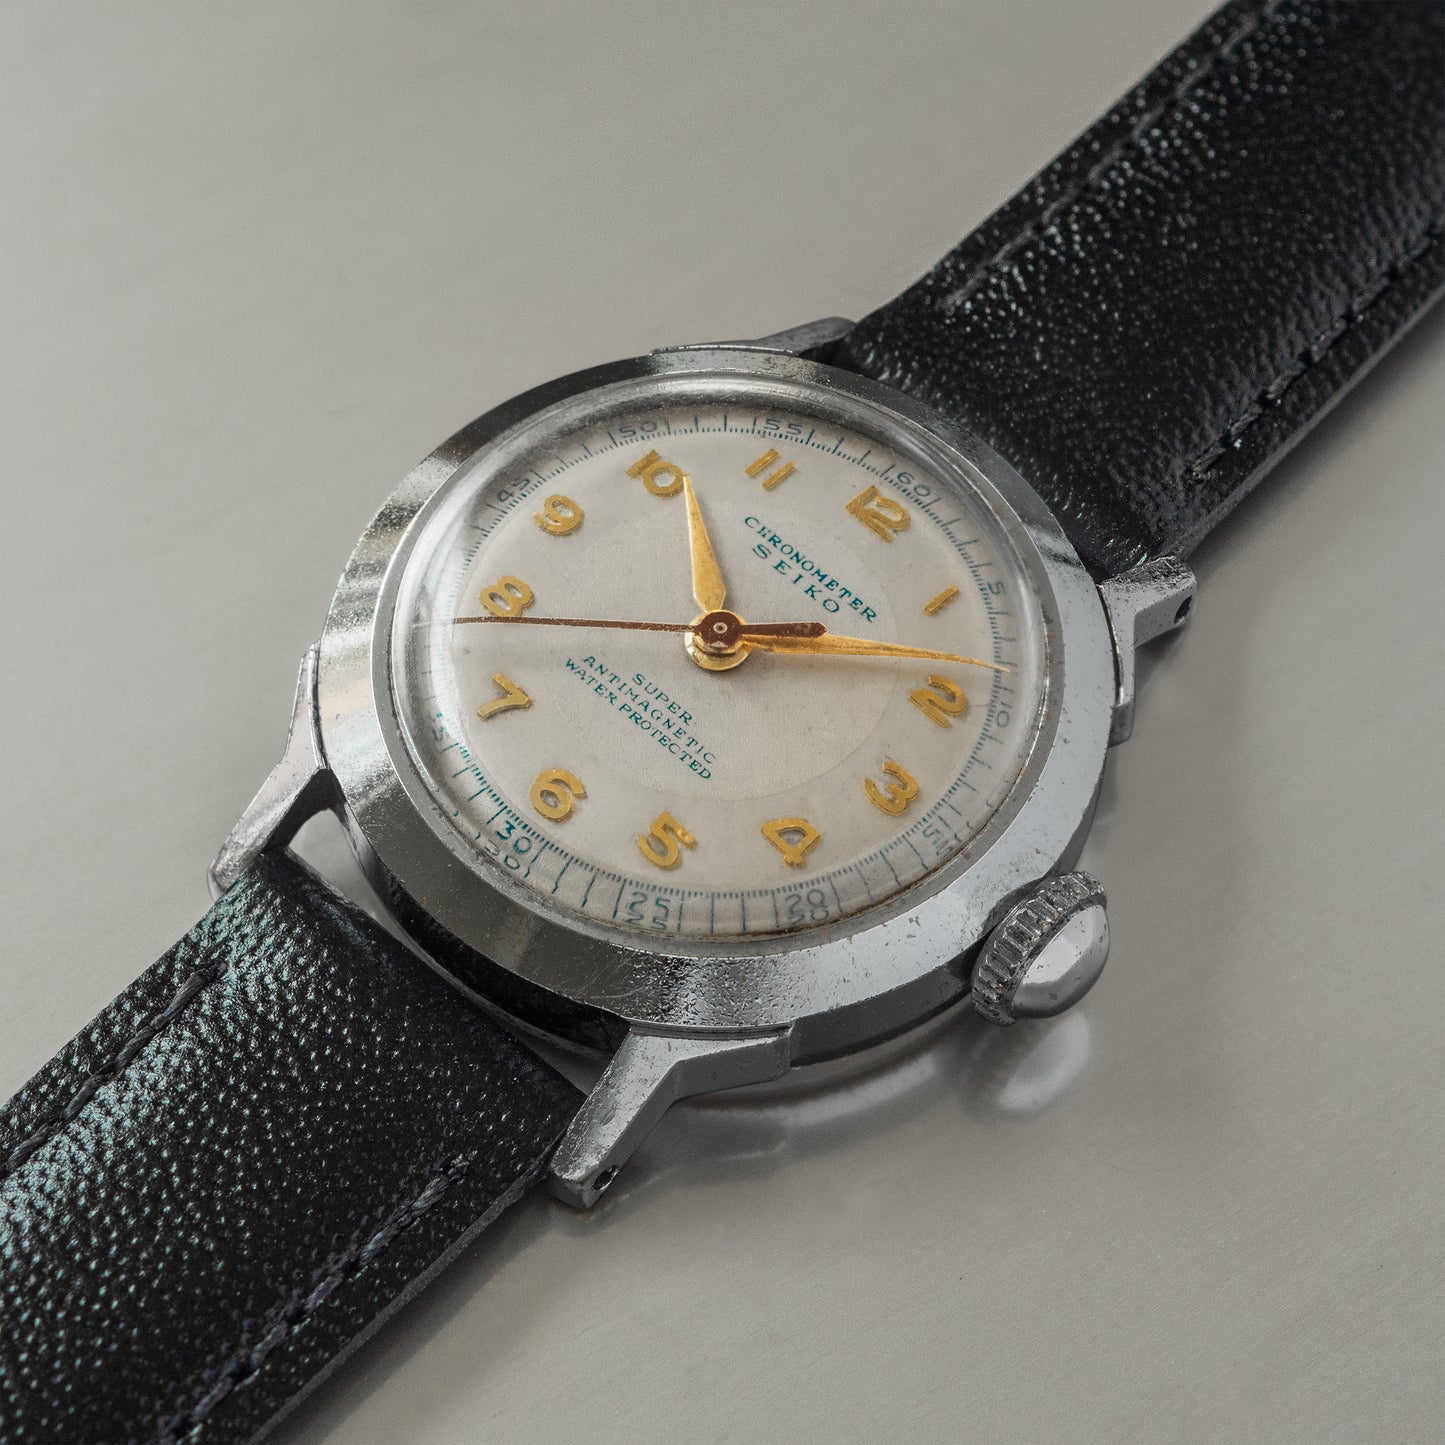 No. 474 / Seiko Super Chronometer - 1950s